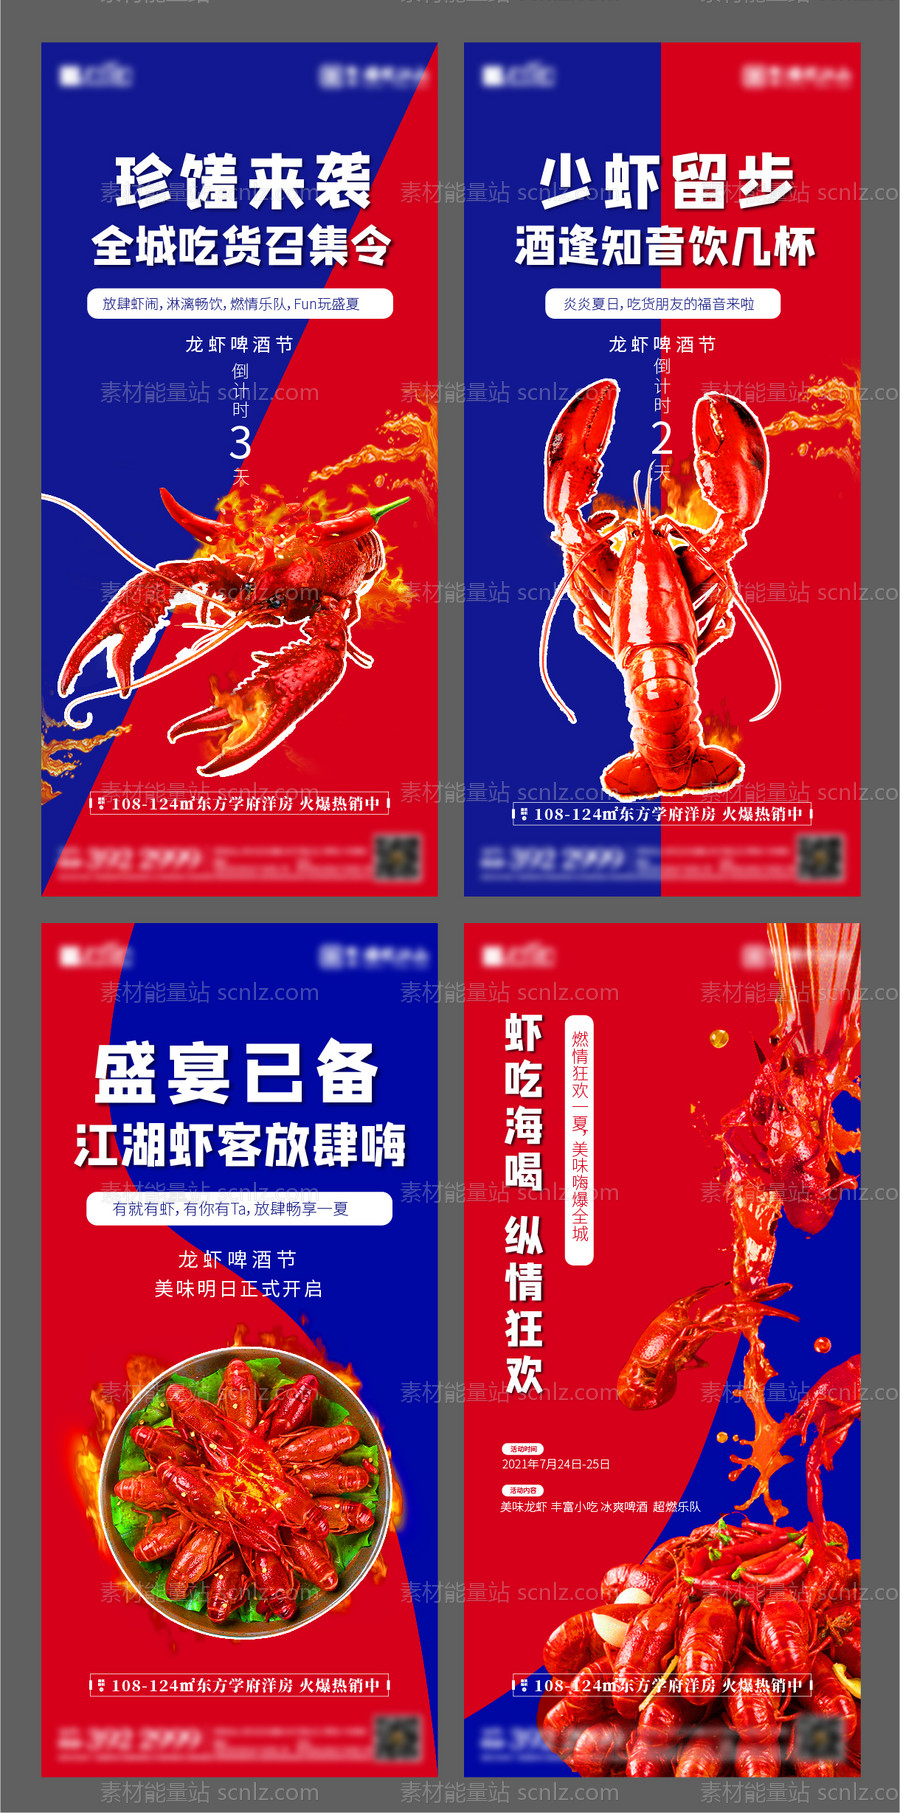 素材能量站-地产小龙虾活动系列海报